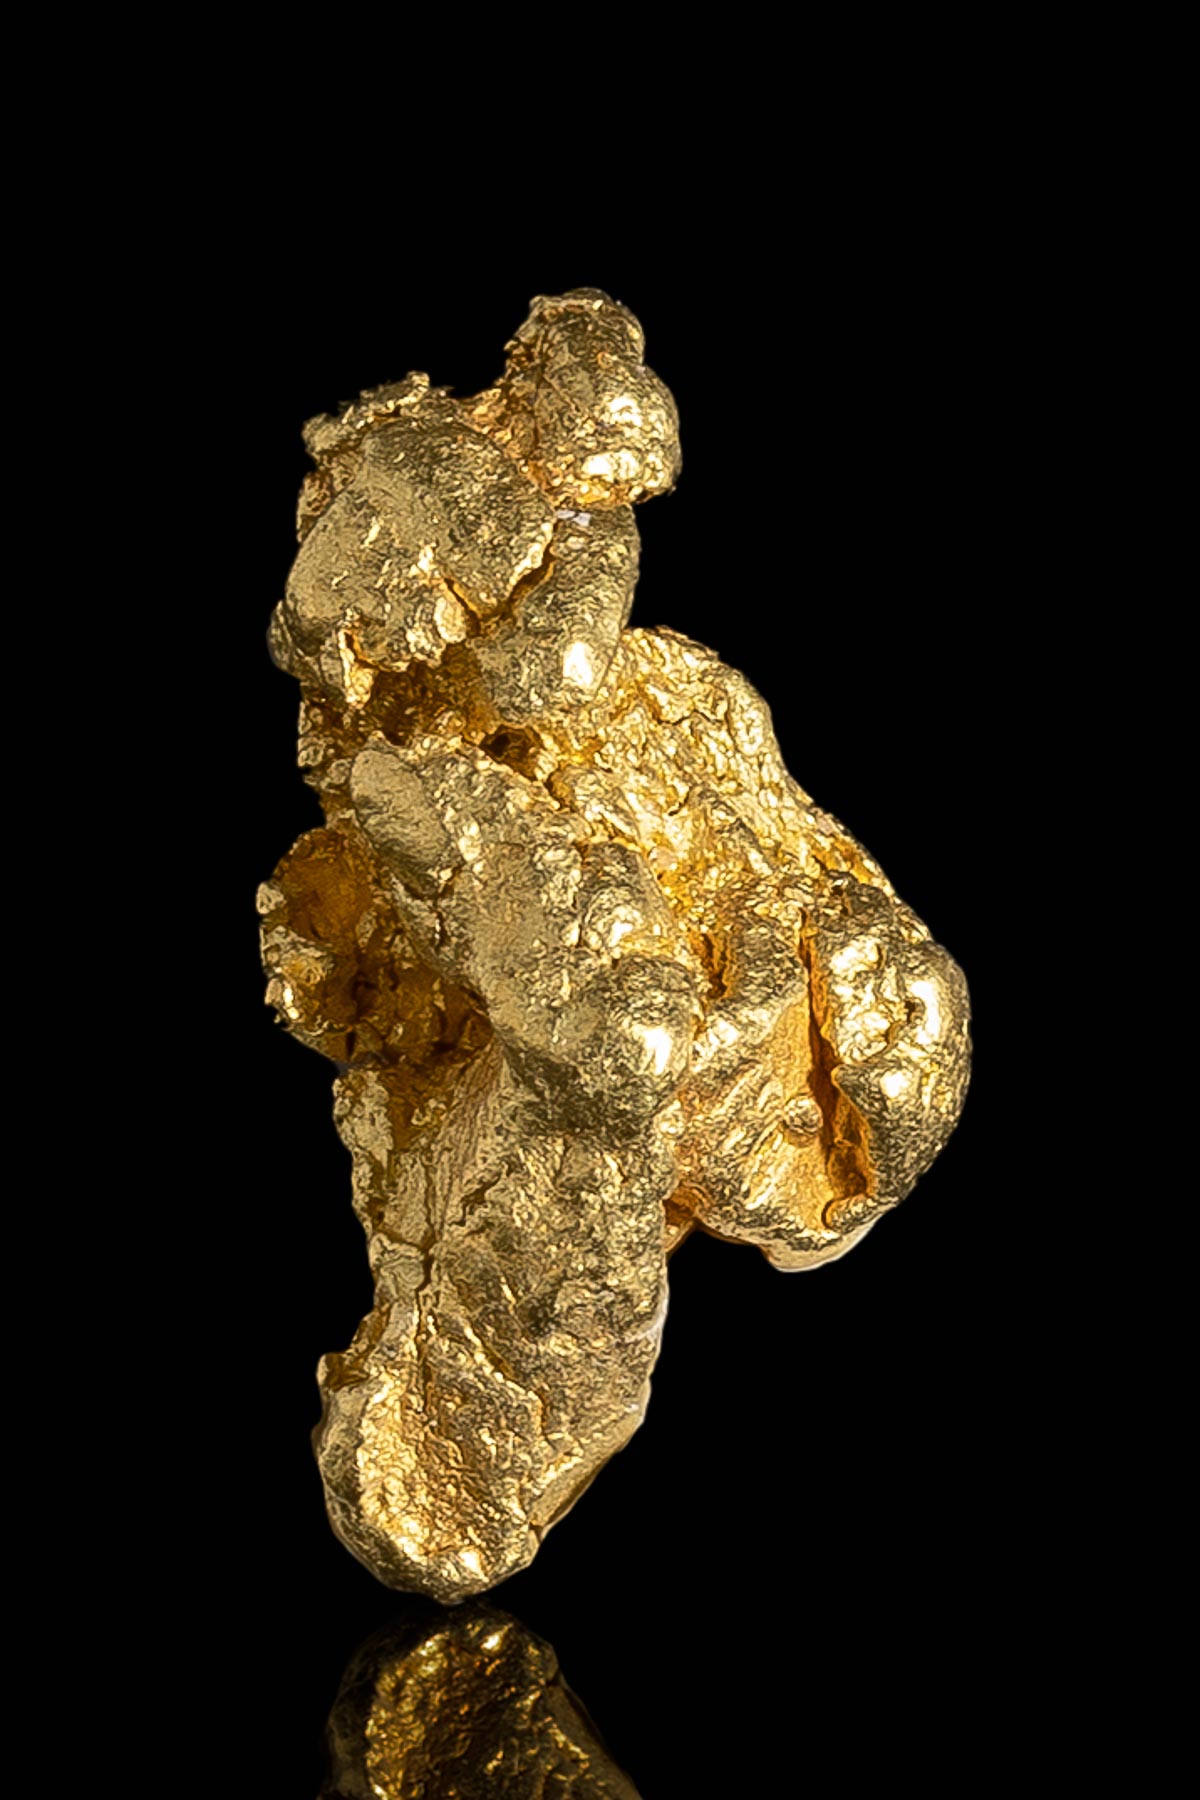 Interesting Shaped Natural Alaska Gold Nugget - 3.44 grams